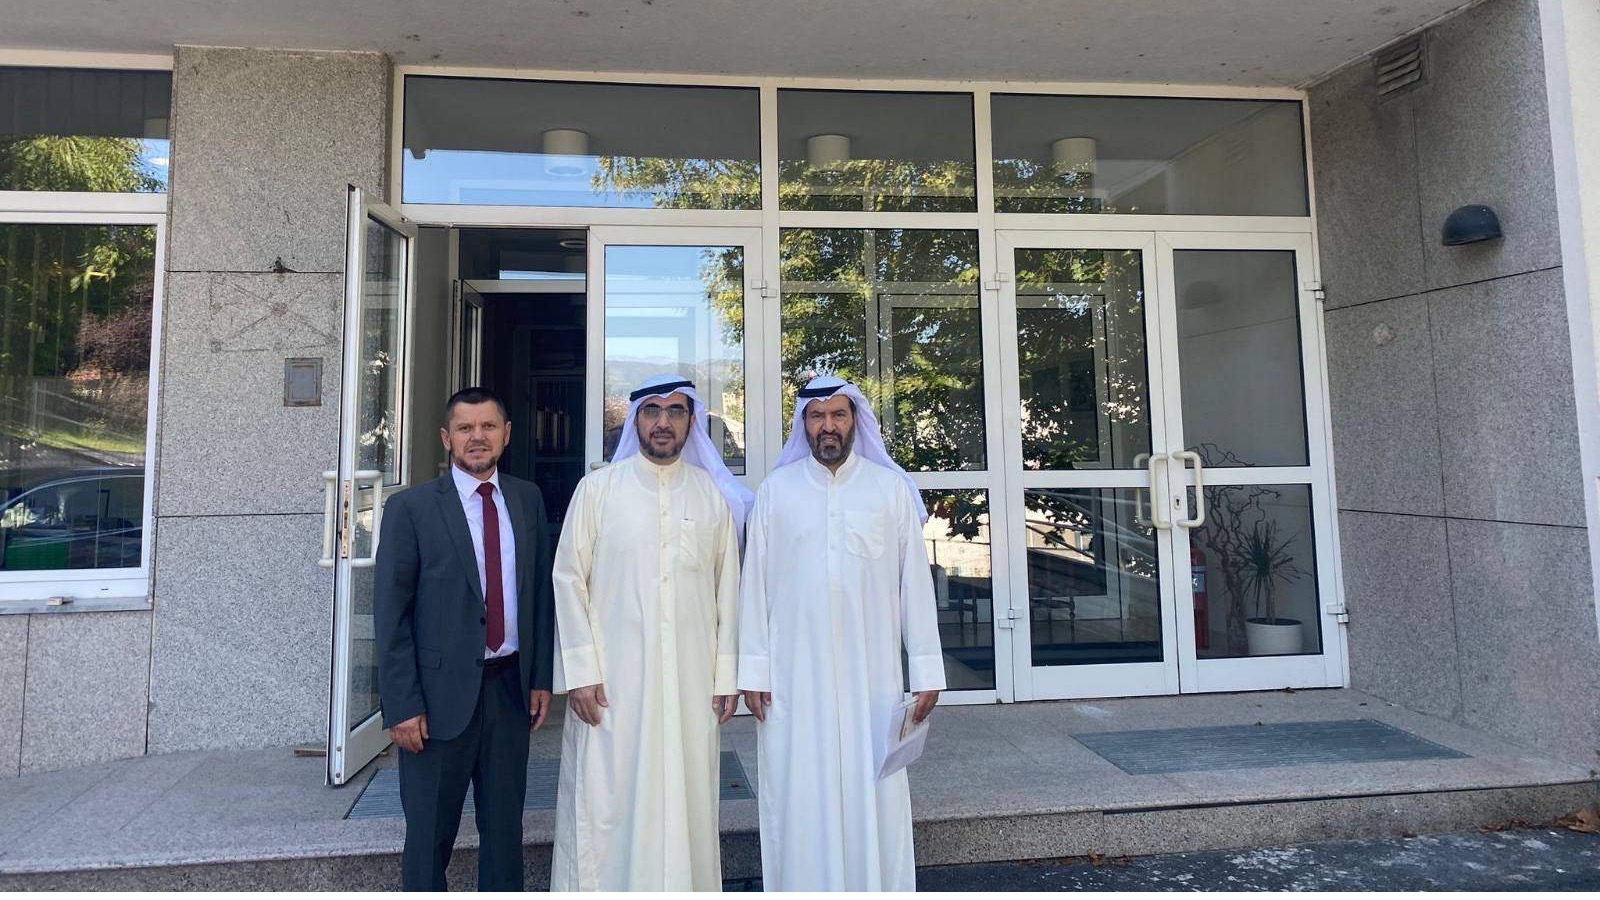 Vakufsku direkciju posjetila kuvajtska delegacija: Uspješna saradnja i brojni realizirani projekti 